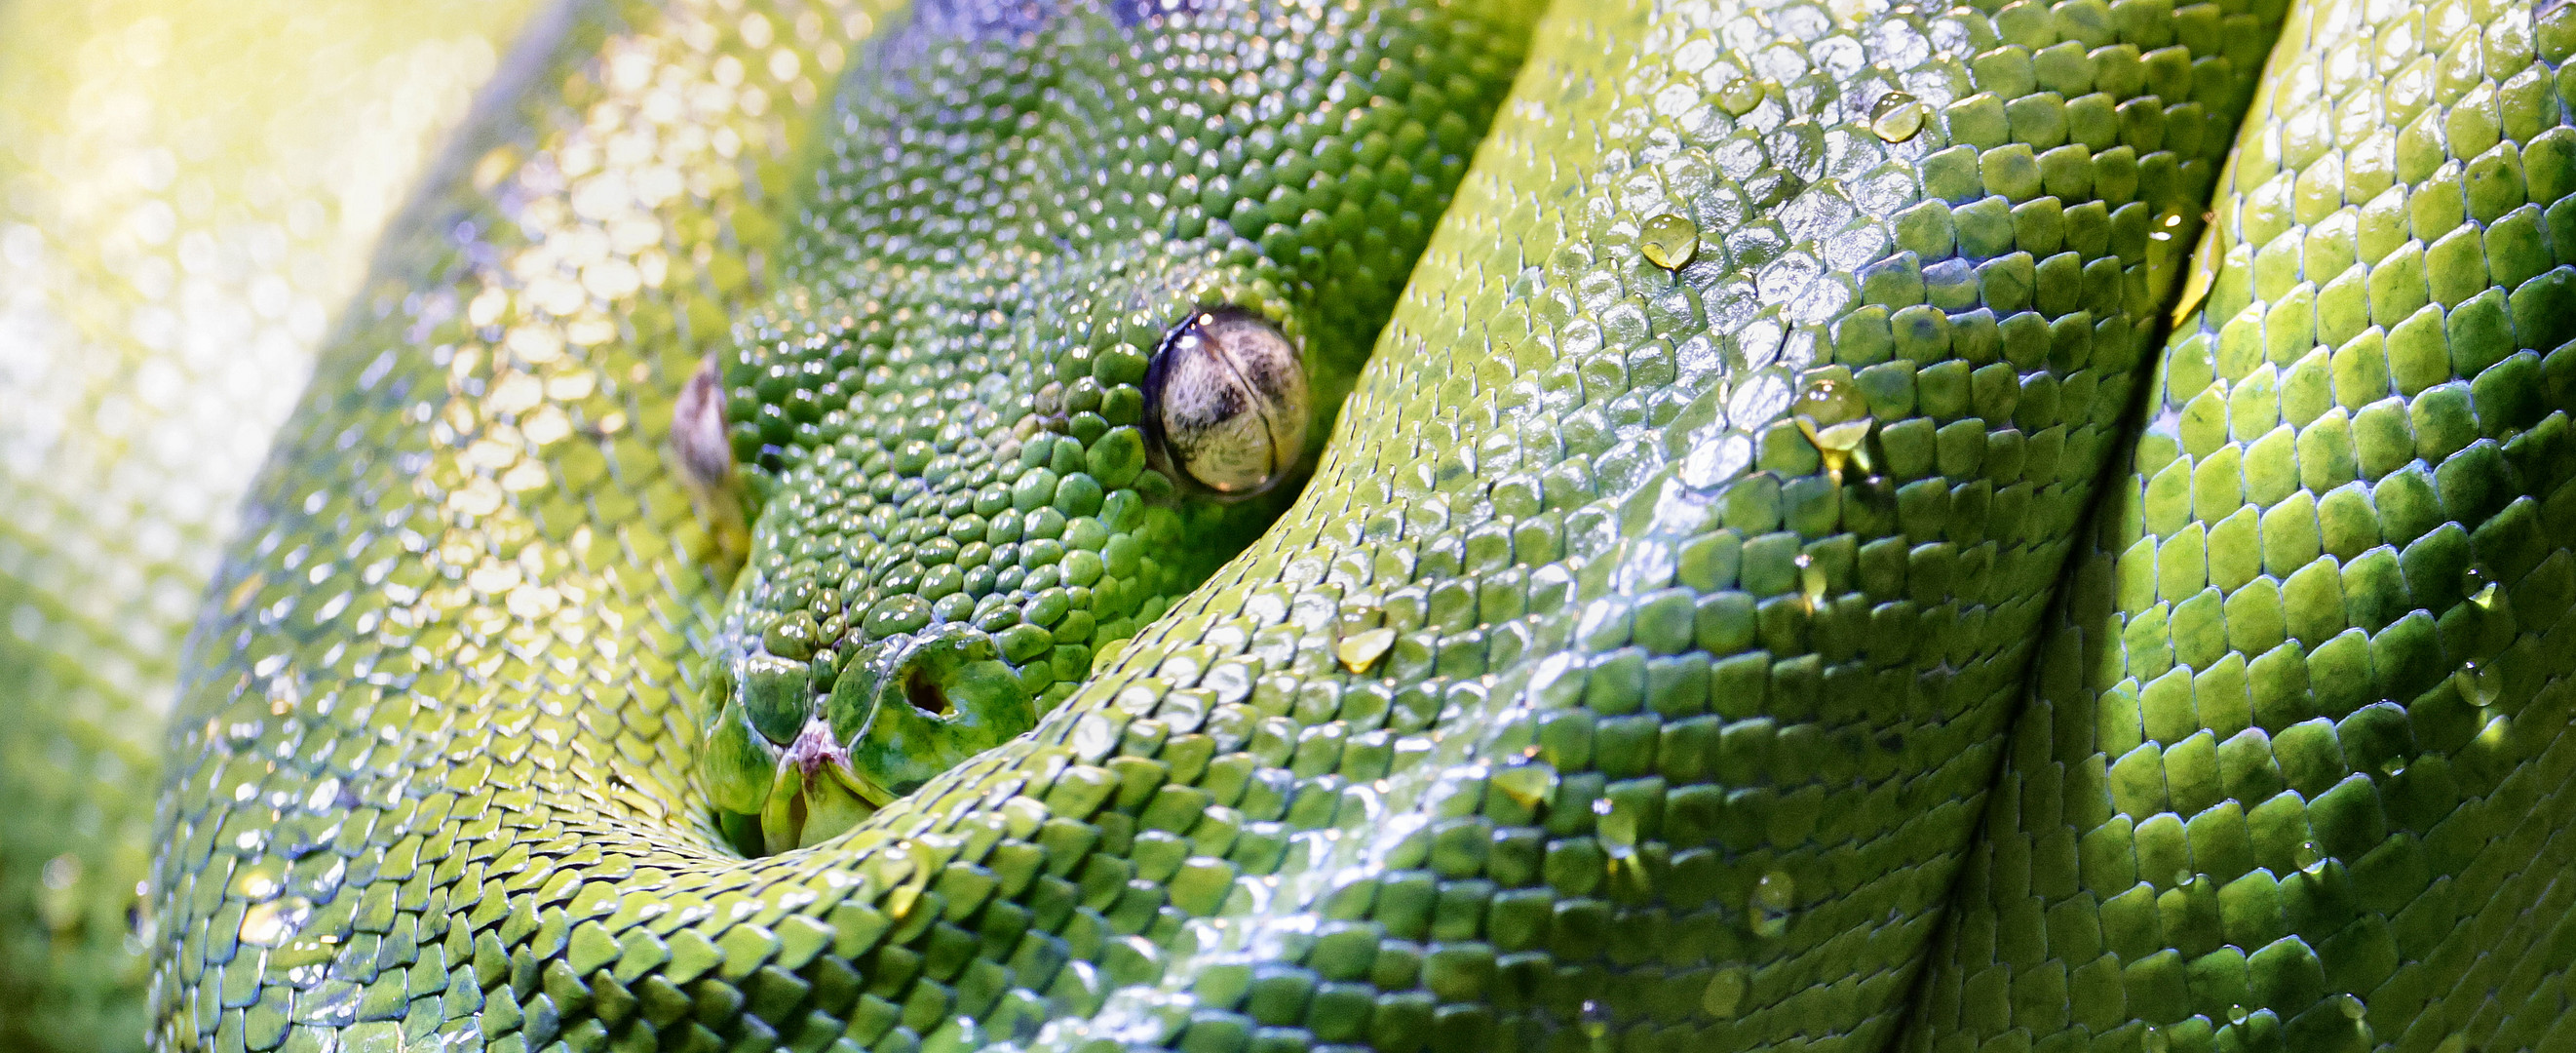 grün +  baum + python 